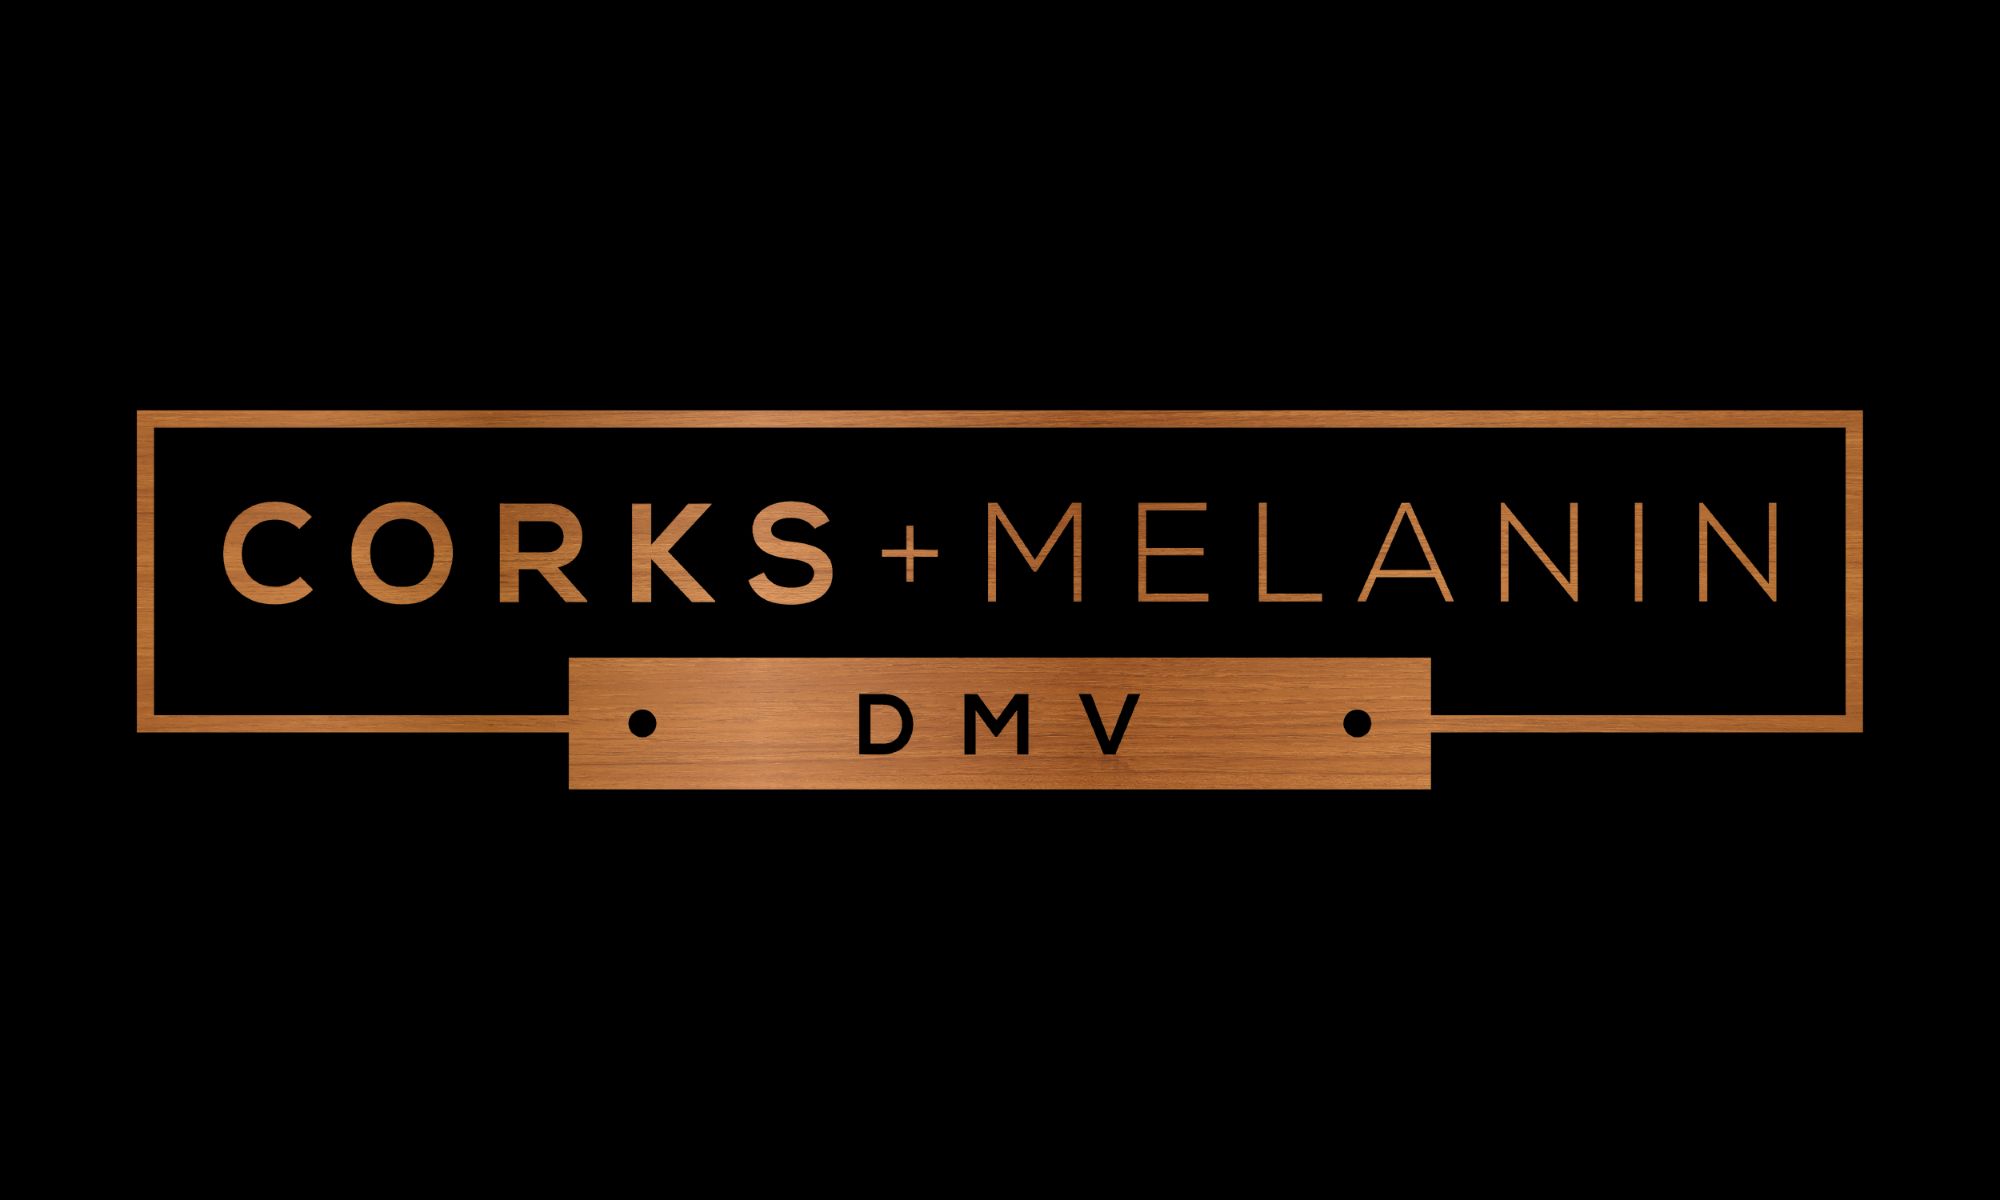 Corks + Melanin DMV